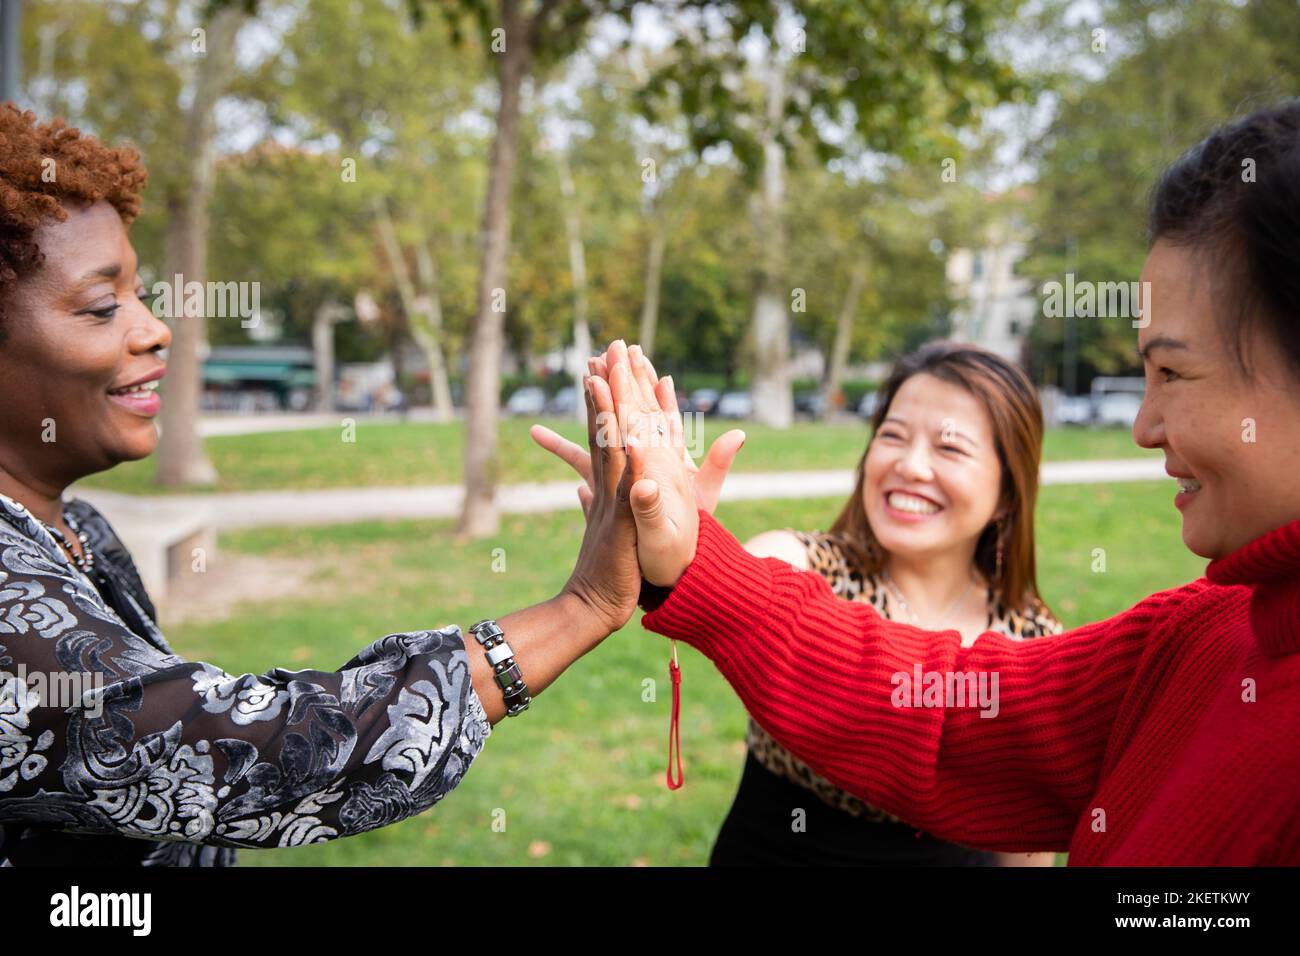 Trois femmes matures aux mains jointes souriantes dans un parc public Banque D'Images